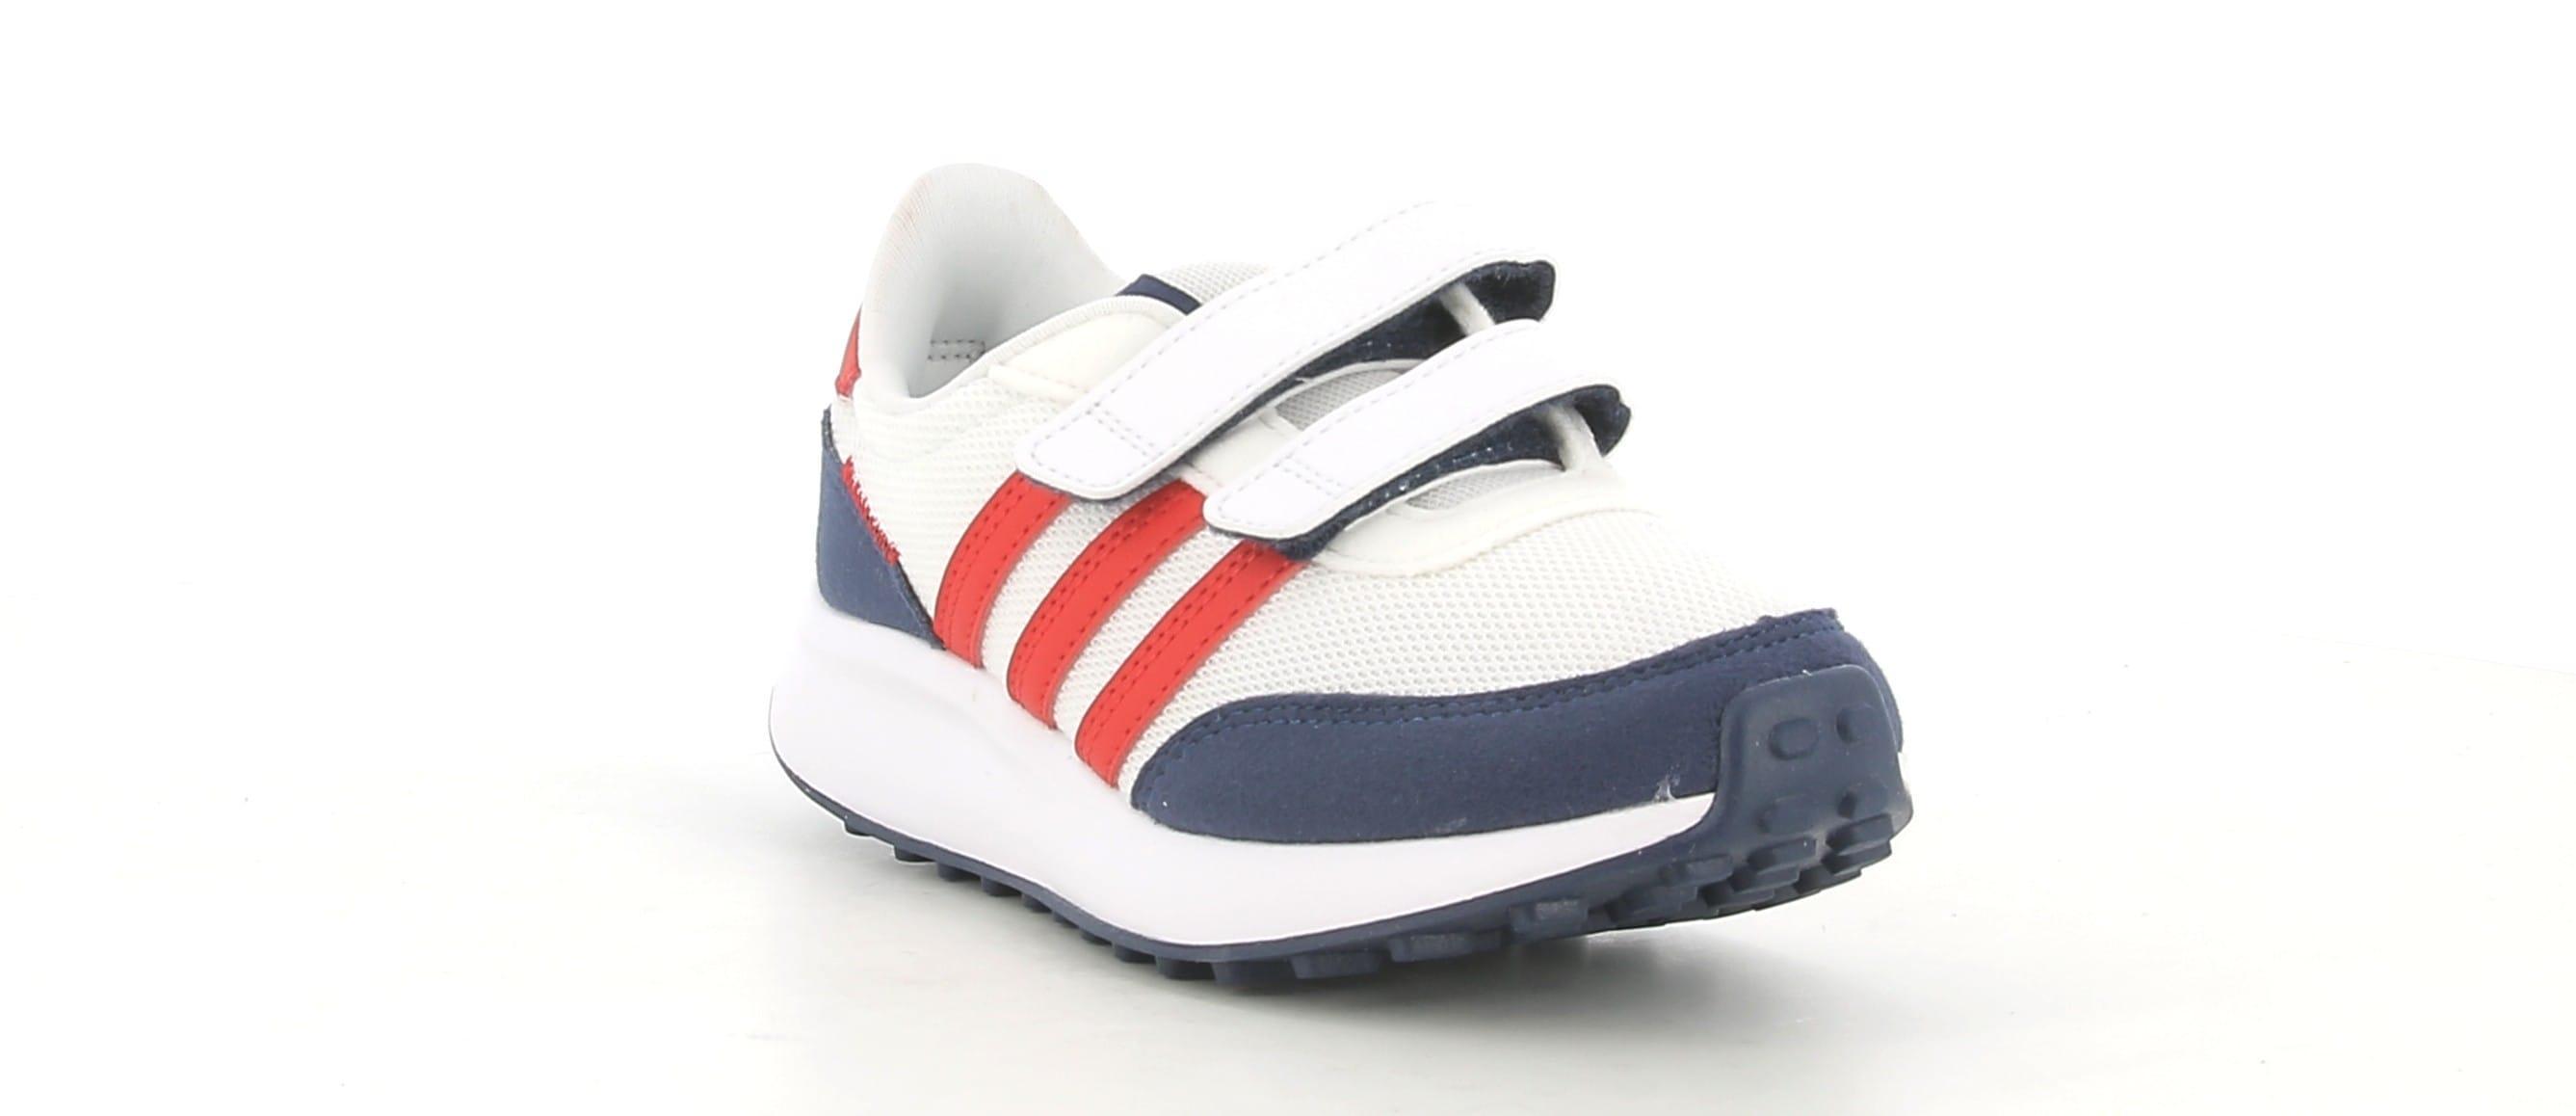 adidas sneakers adidas run 70s cf k gw0333.da bambino,colore bianco/rosso/blu